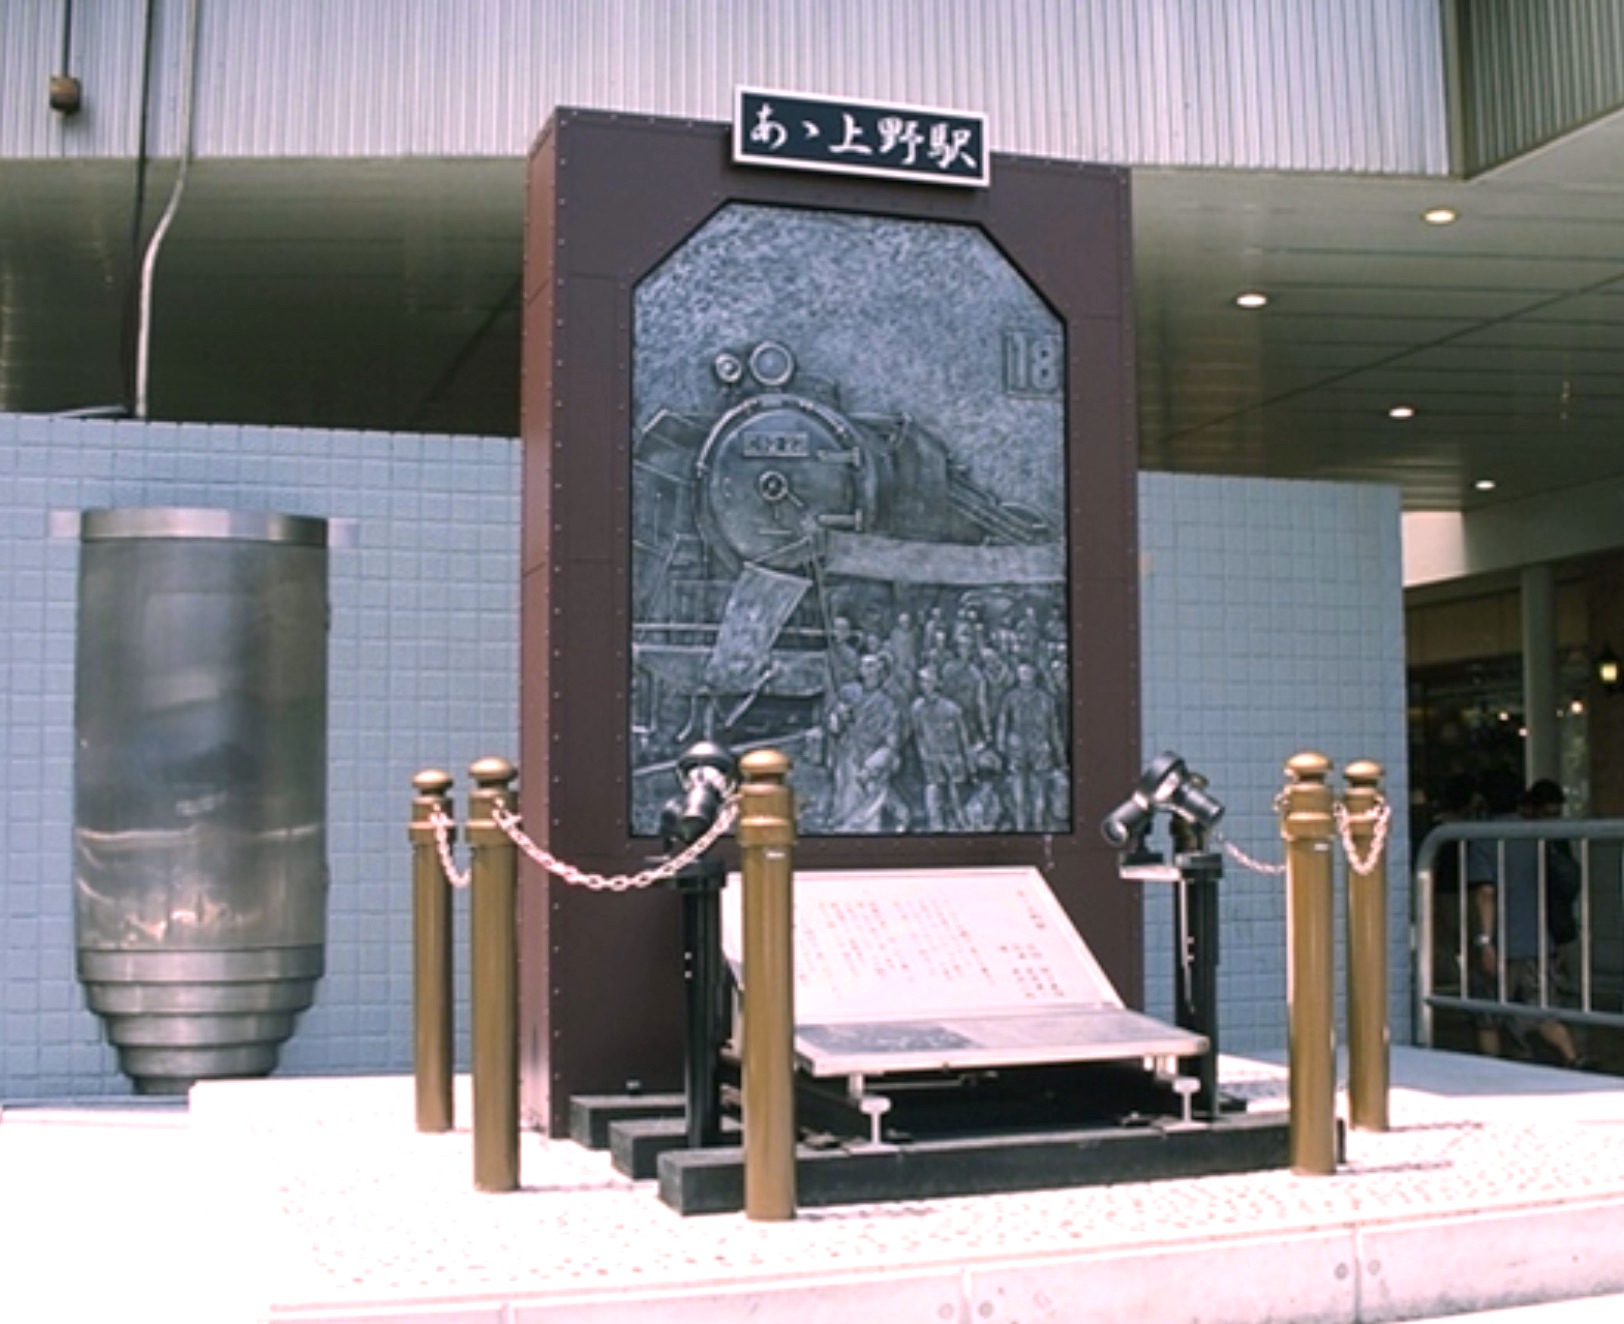 『あゝ上野駅』歌碑